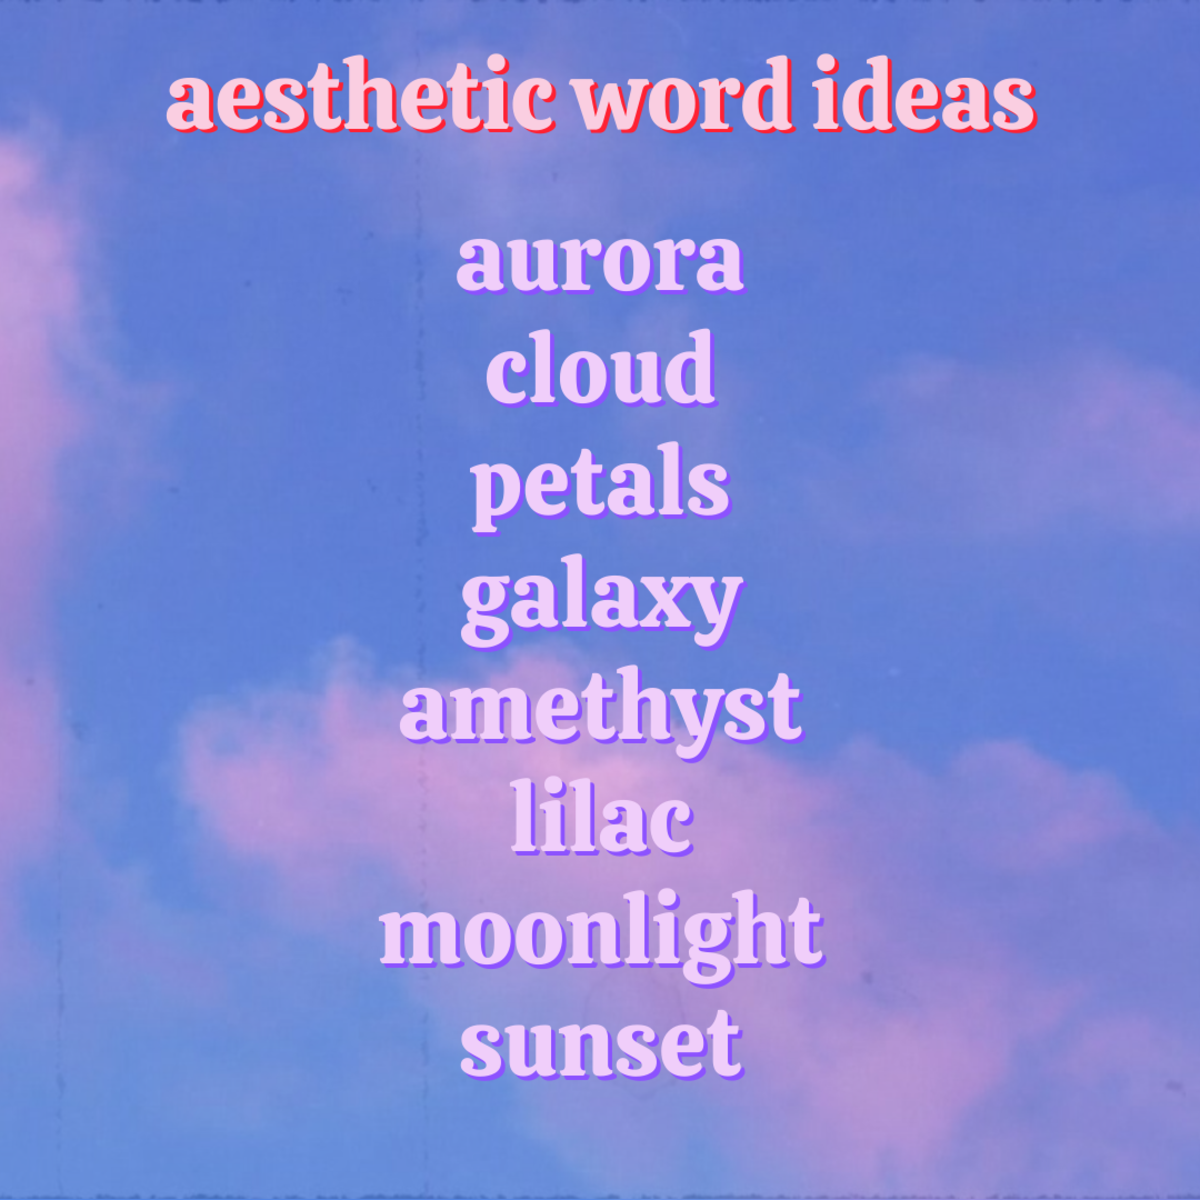 以下是您可以融入您的用户名的一些美学单词！